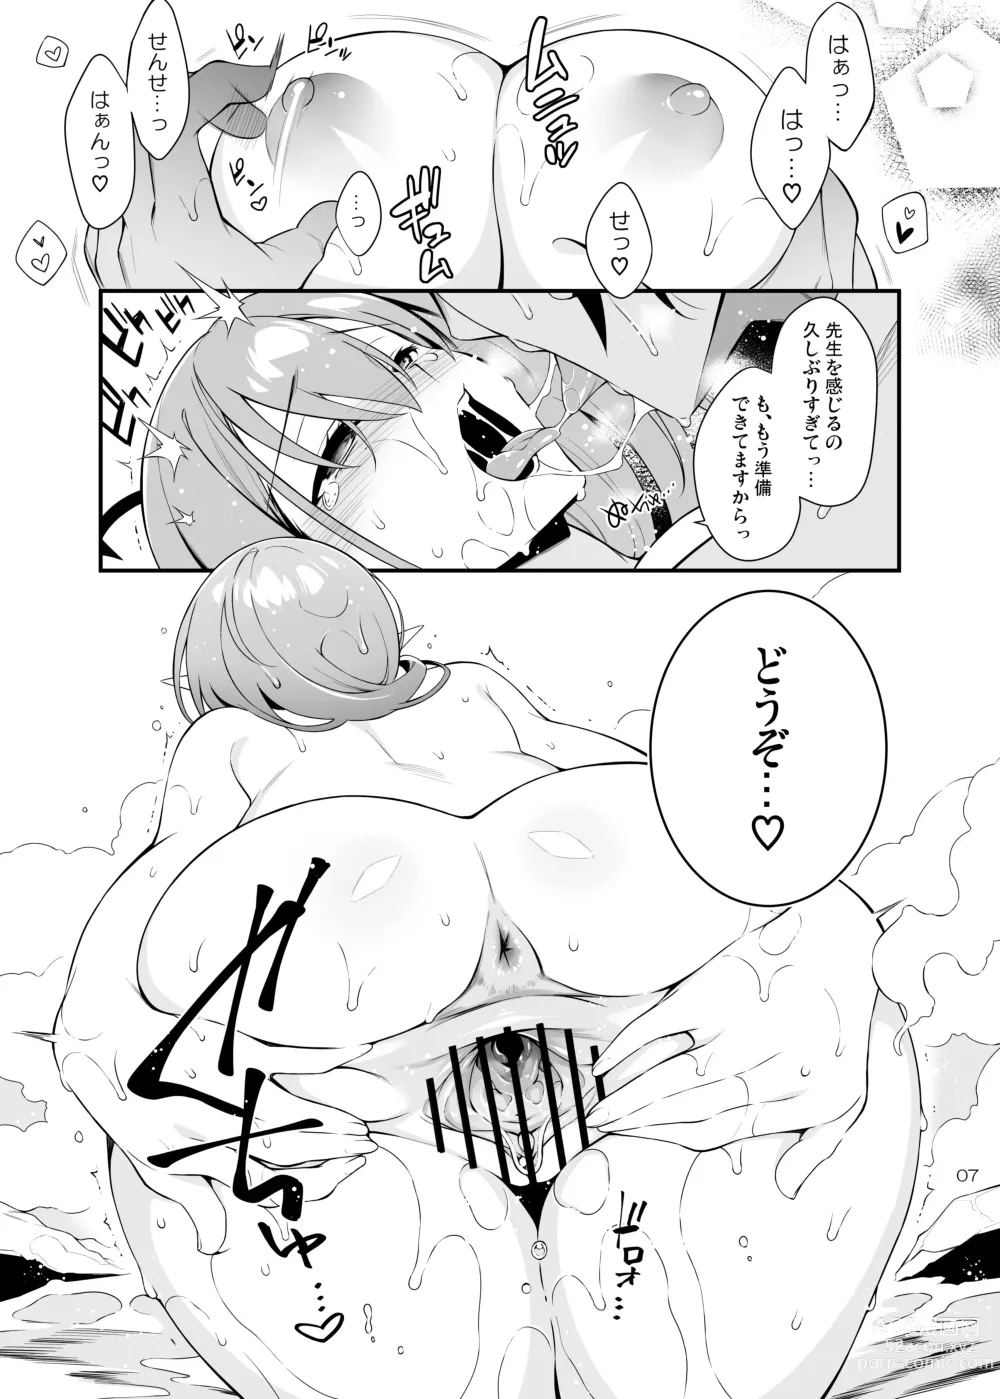 Page 6 of doujinshi Fuuki ga midarete imasu